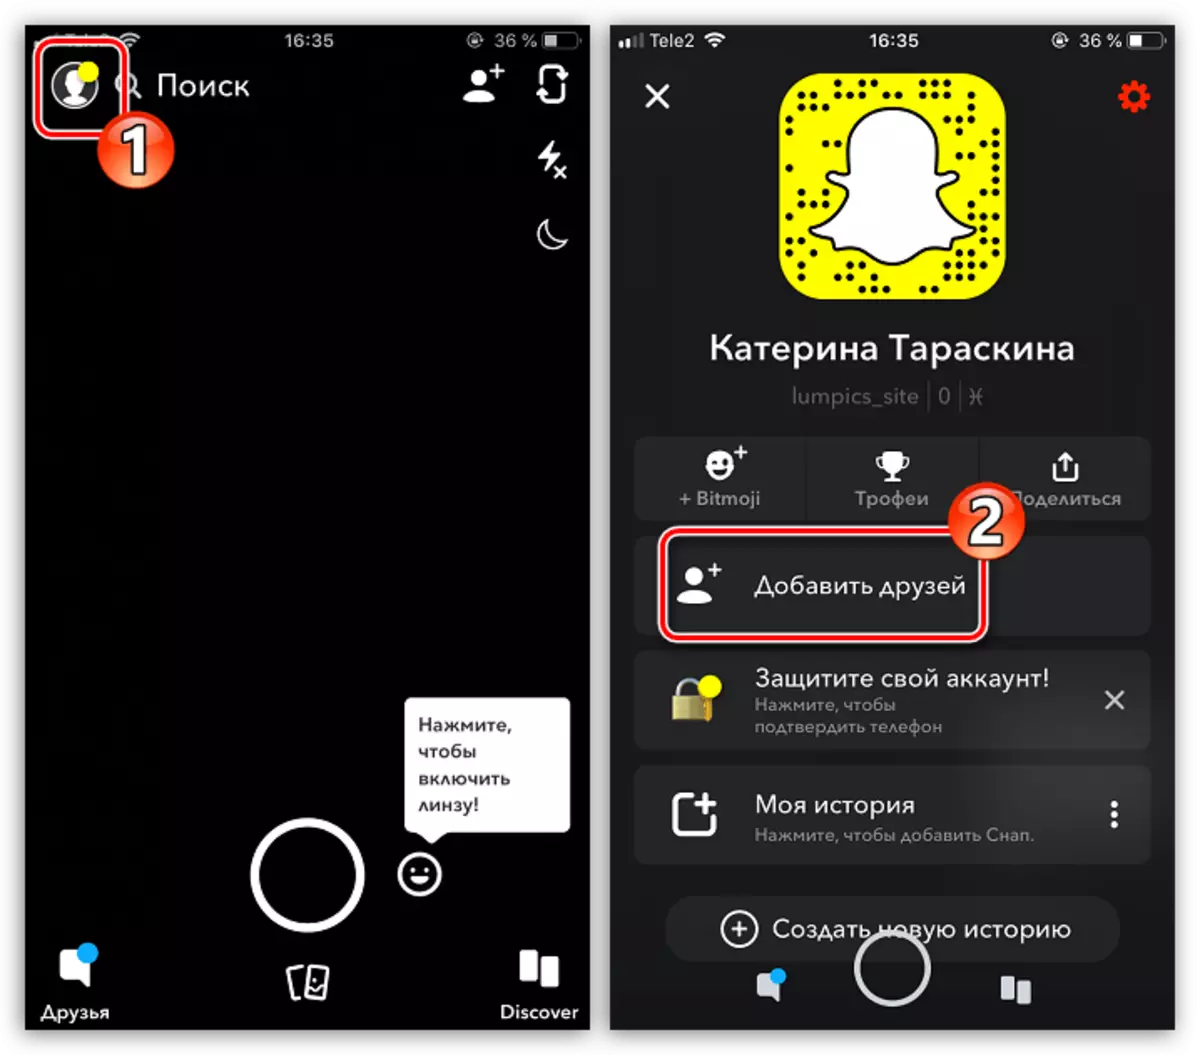 Traži prijatelje u aplikaciji Snapchat na iPhoneu